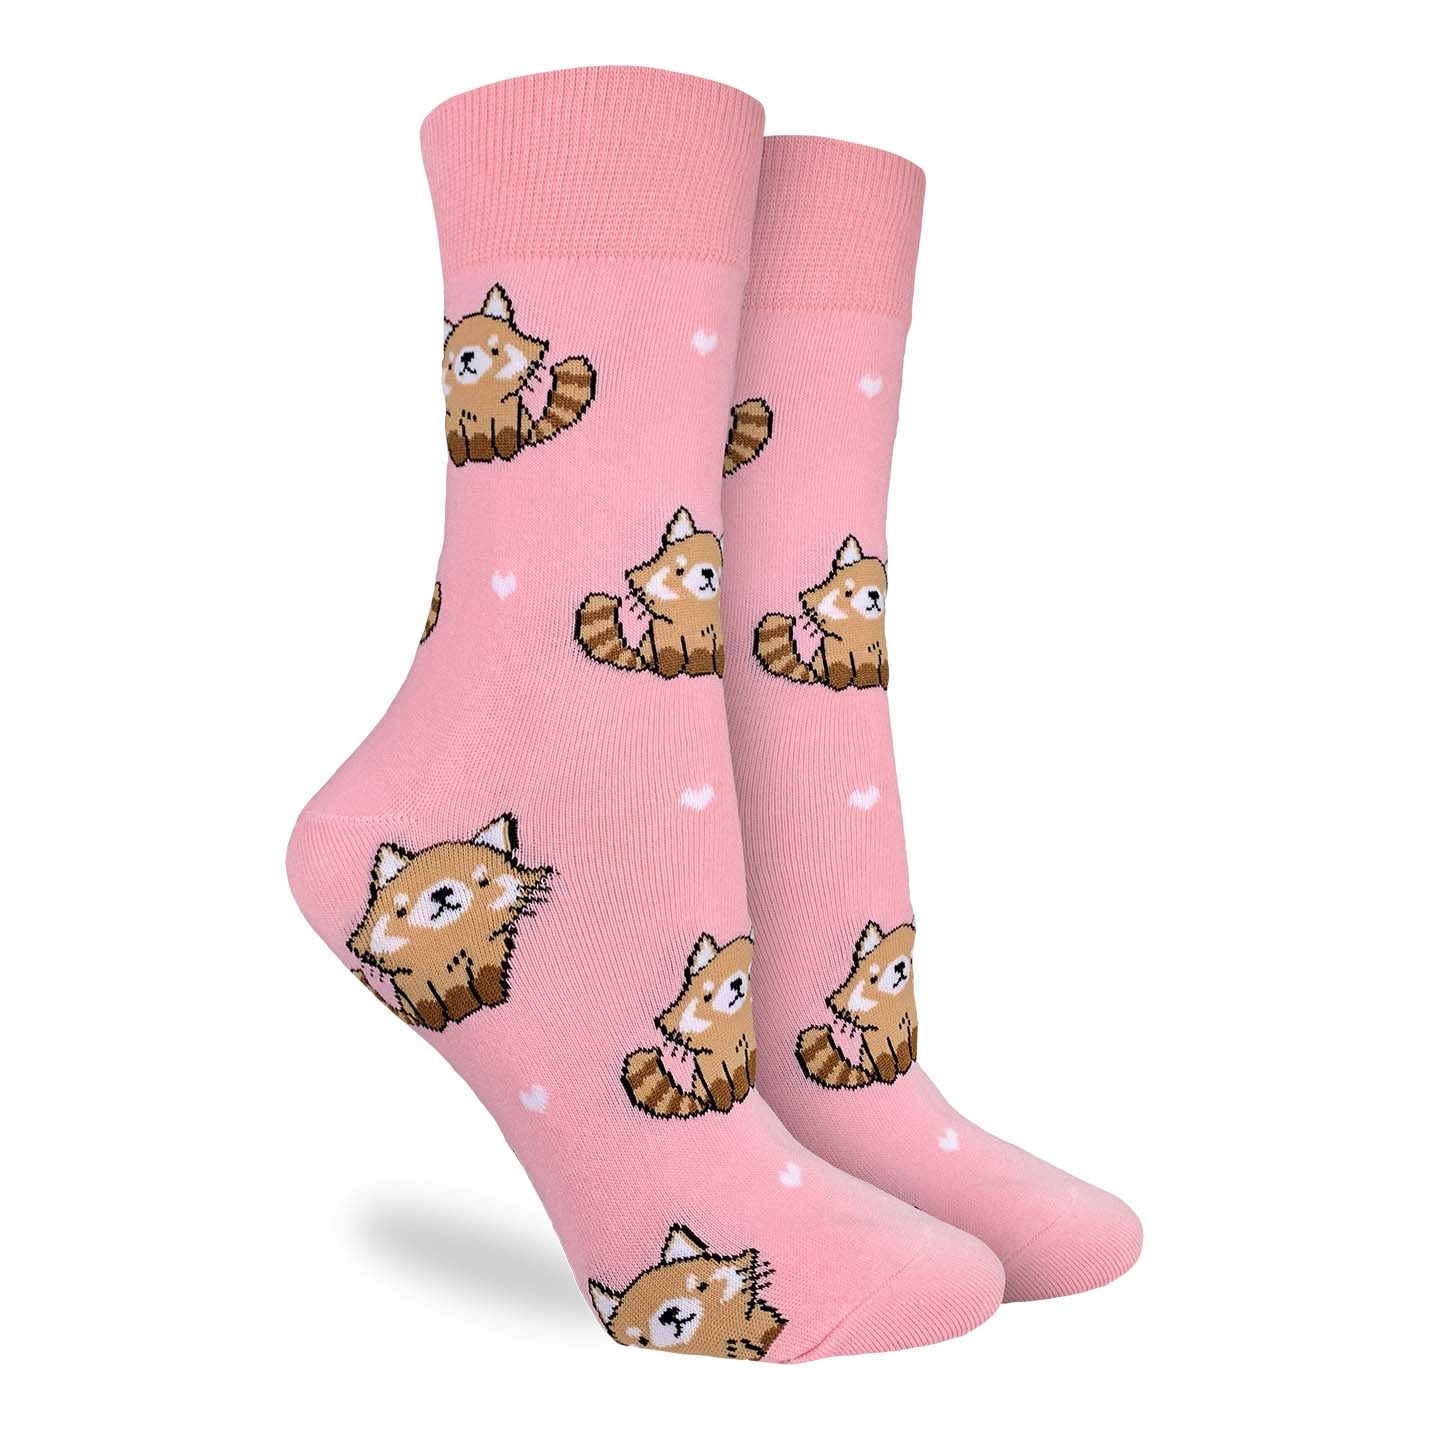 Good Luck Sock - Socks Cute Red Panda